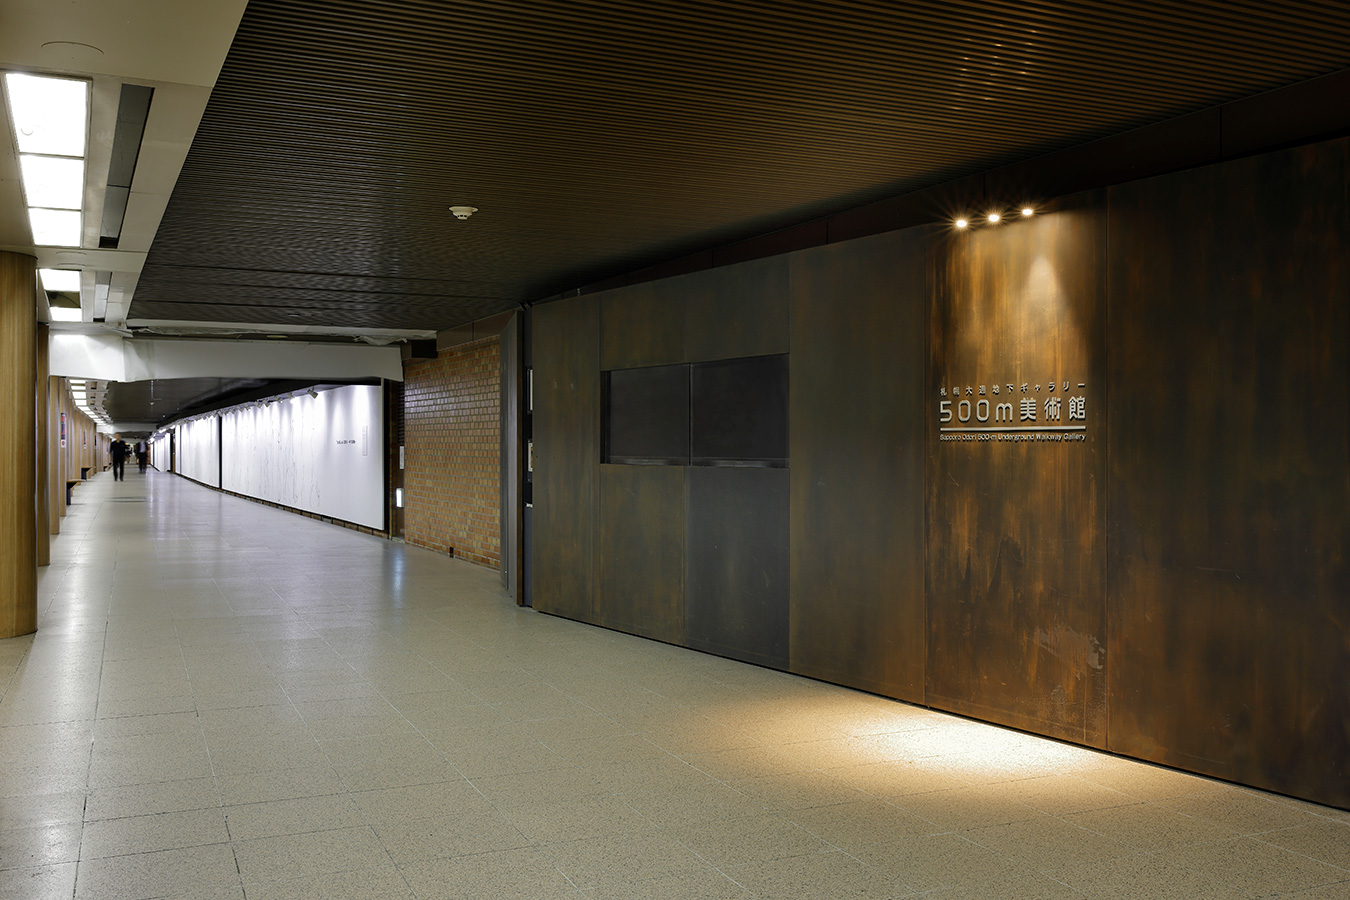 札幌の美術館人気スポット10選　7位:札幌大通地下ギャラリー 500m美術館